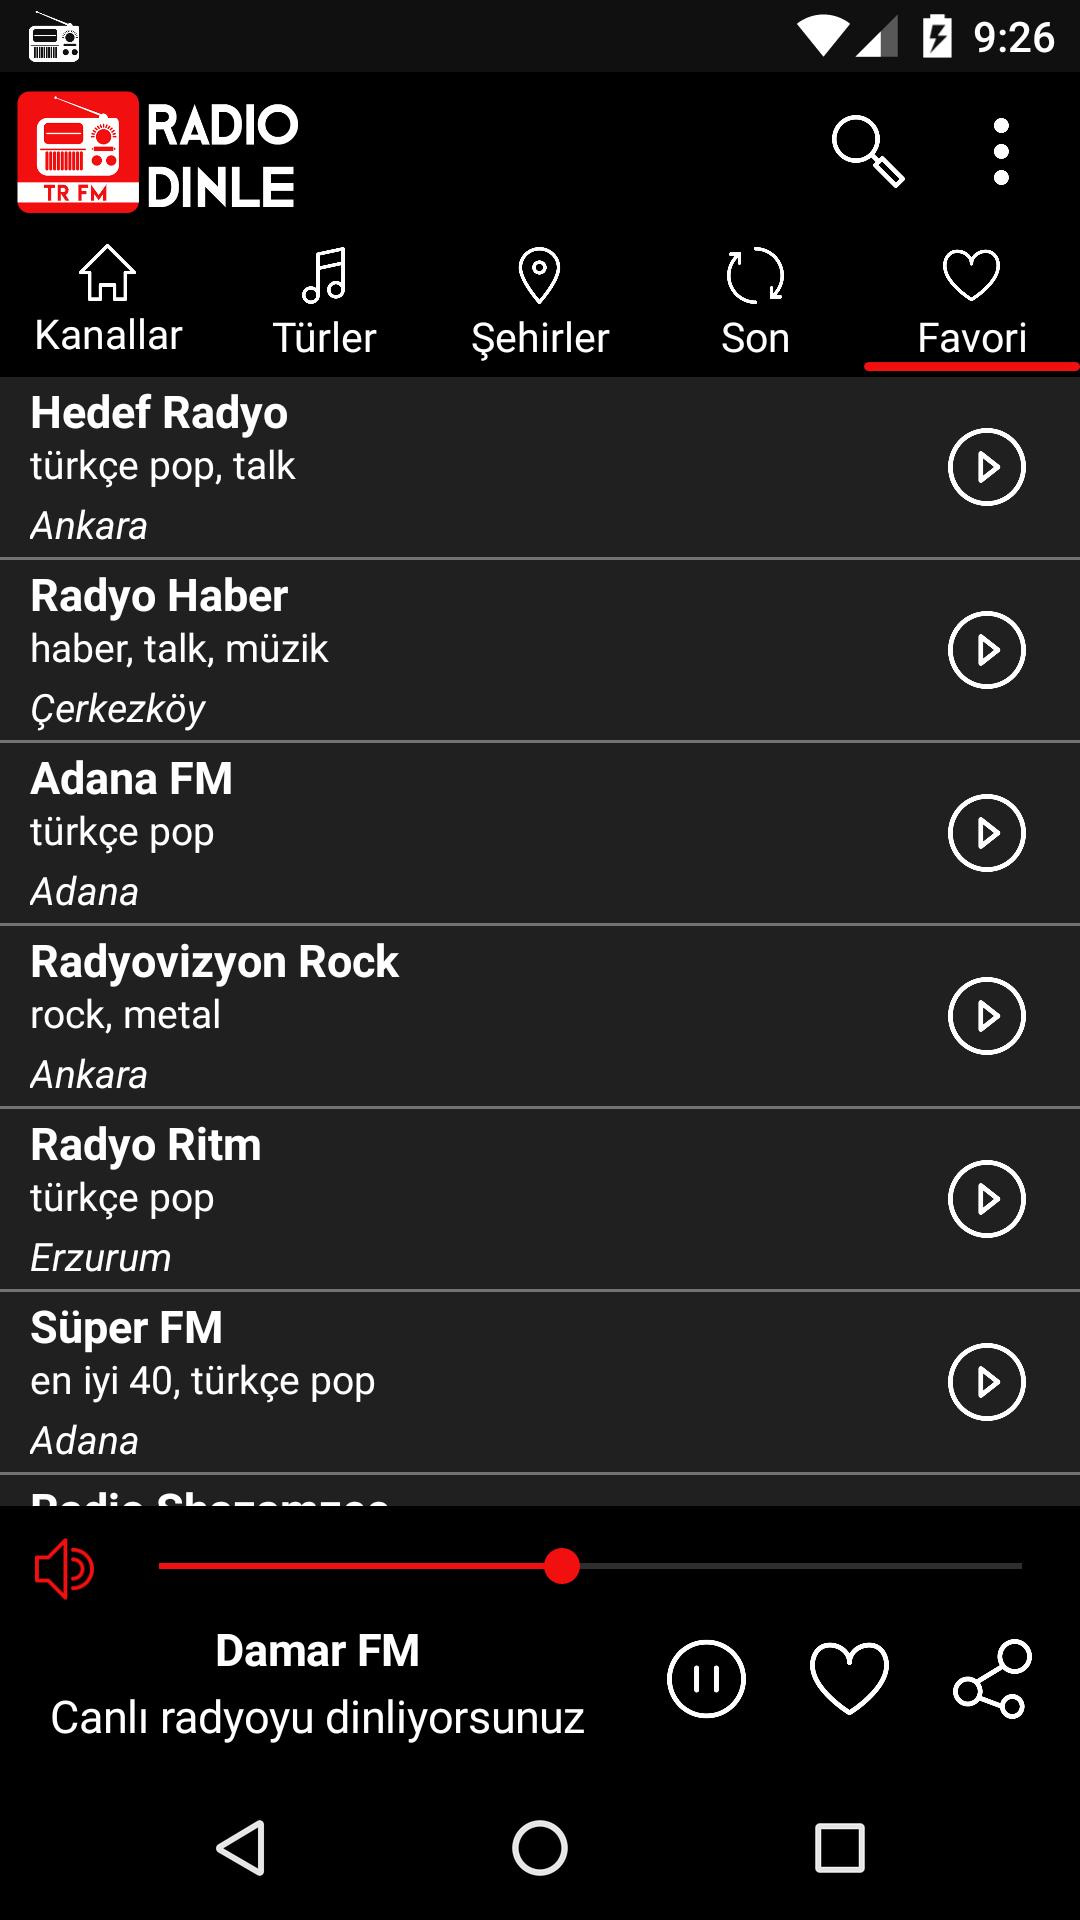 Généraliser Des séries chronologiques Perspective türkçe pop radyo  Troisième Russie Isoler